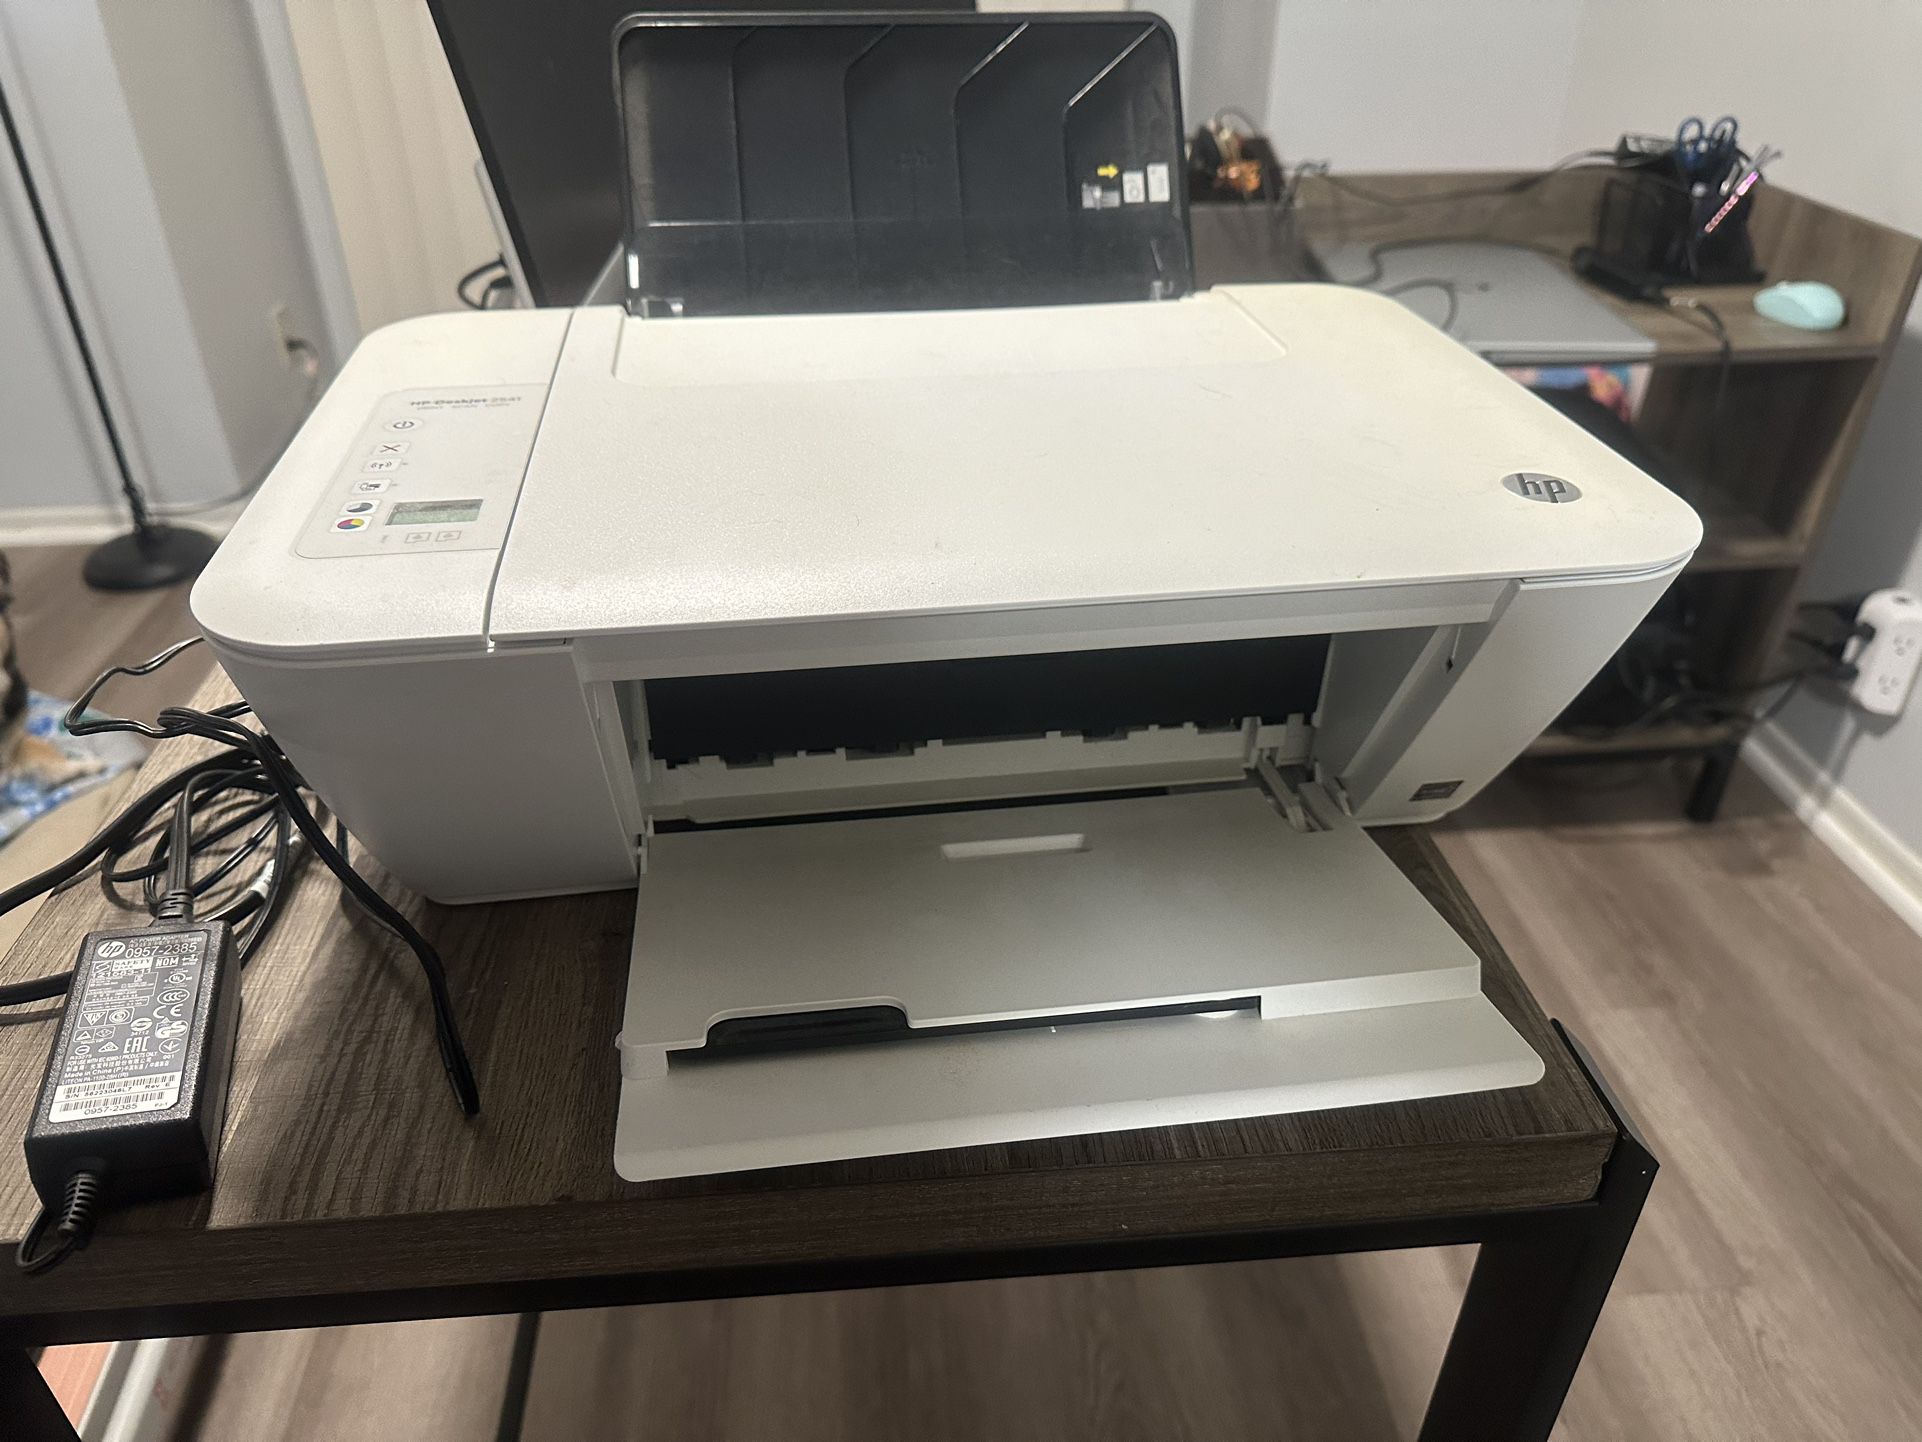 HP Desk Jet Printer All in One